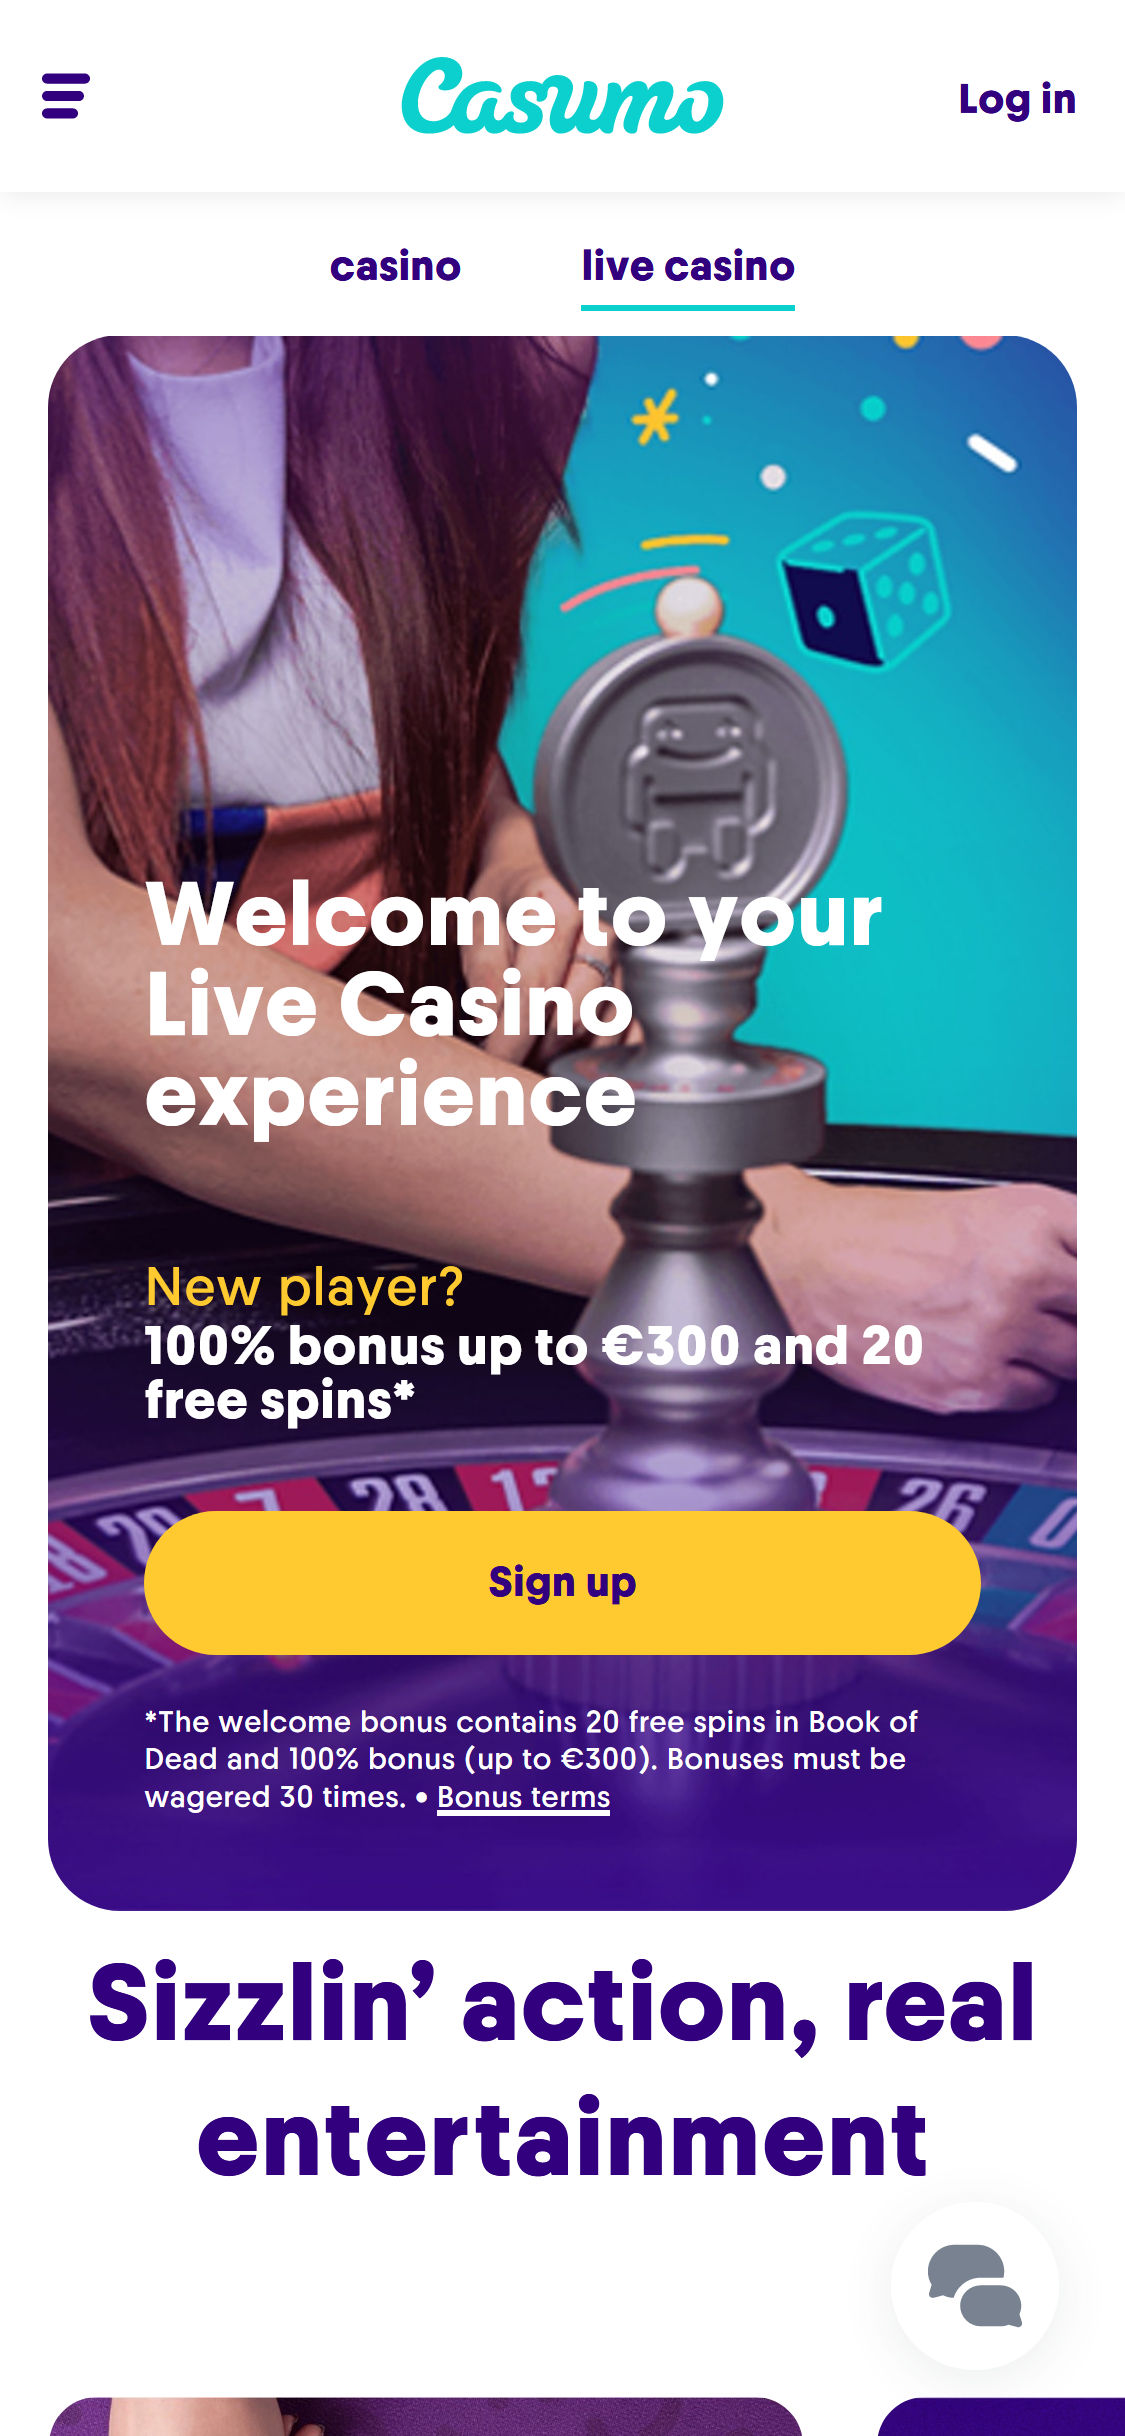 Casumo Casino Mobile Live Dealer Games Review